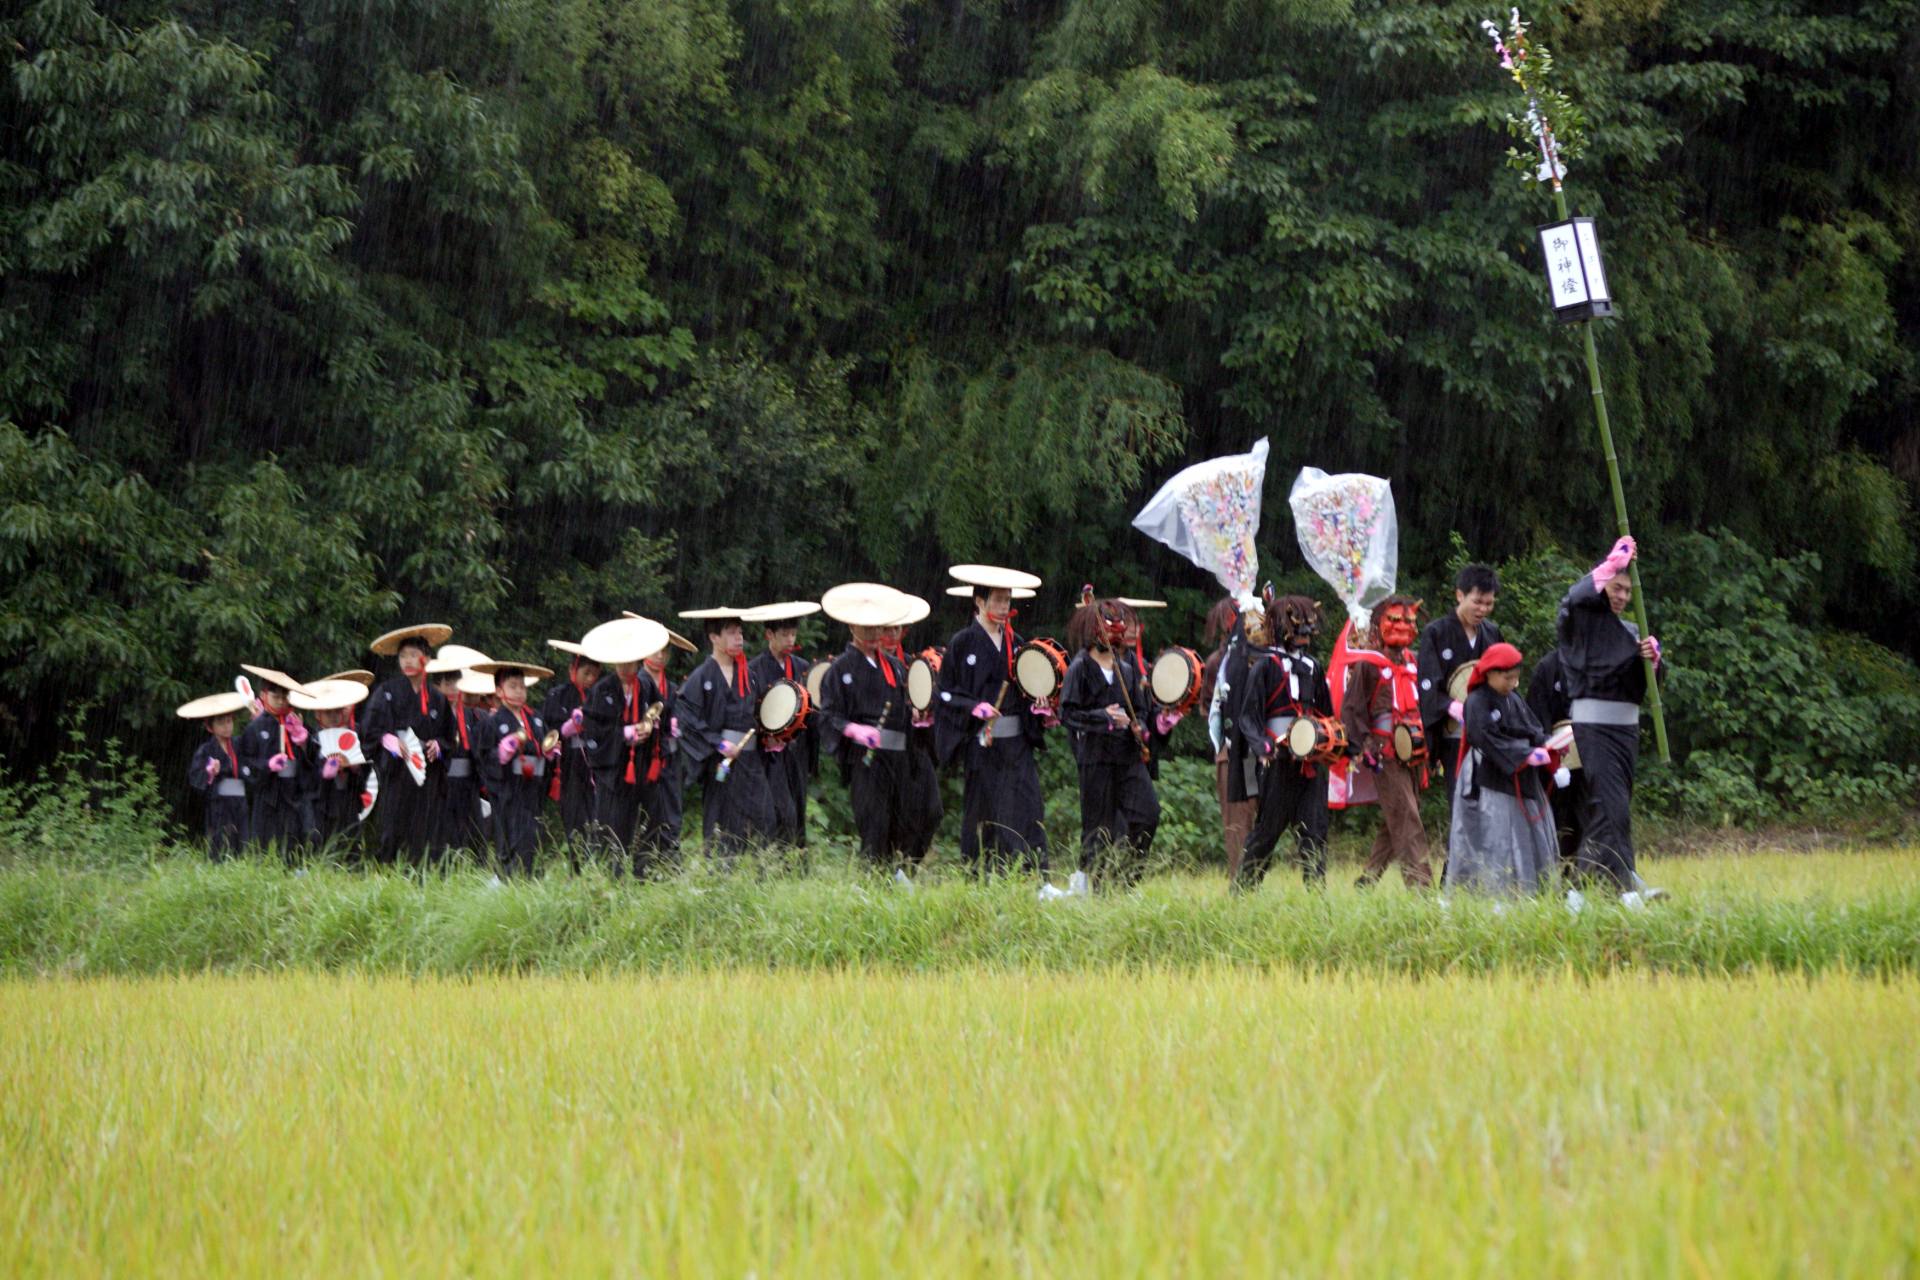 道歌をうたいながら村を練り歩く一行。集落の人びとは、一行の歌声で祭りの訪れを知る。